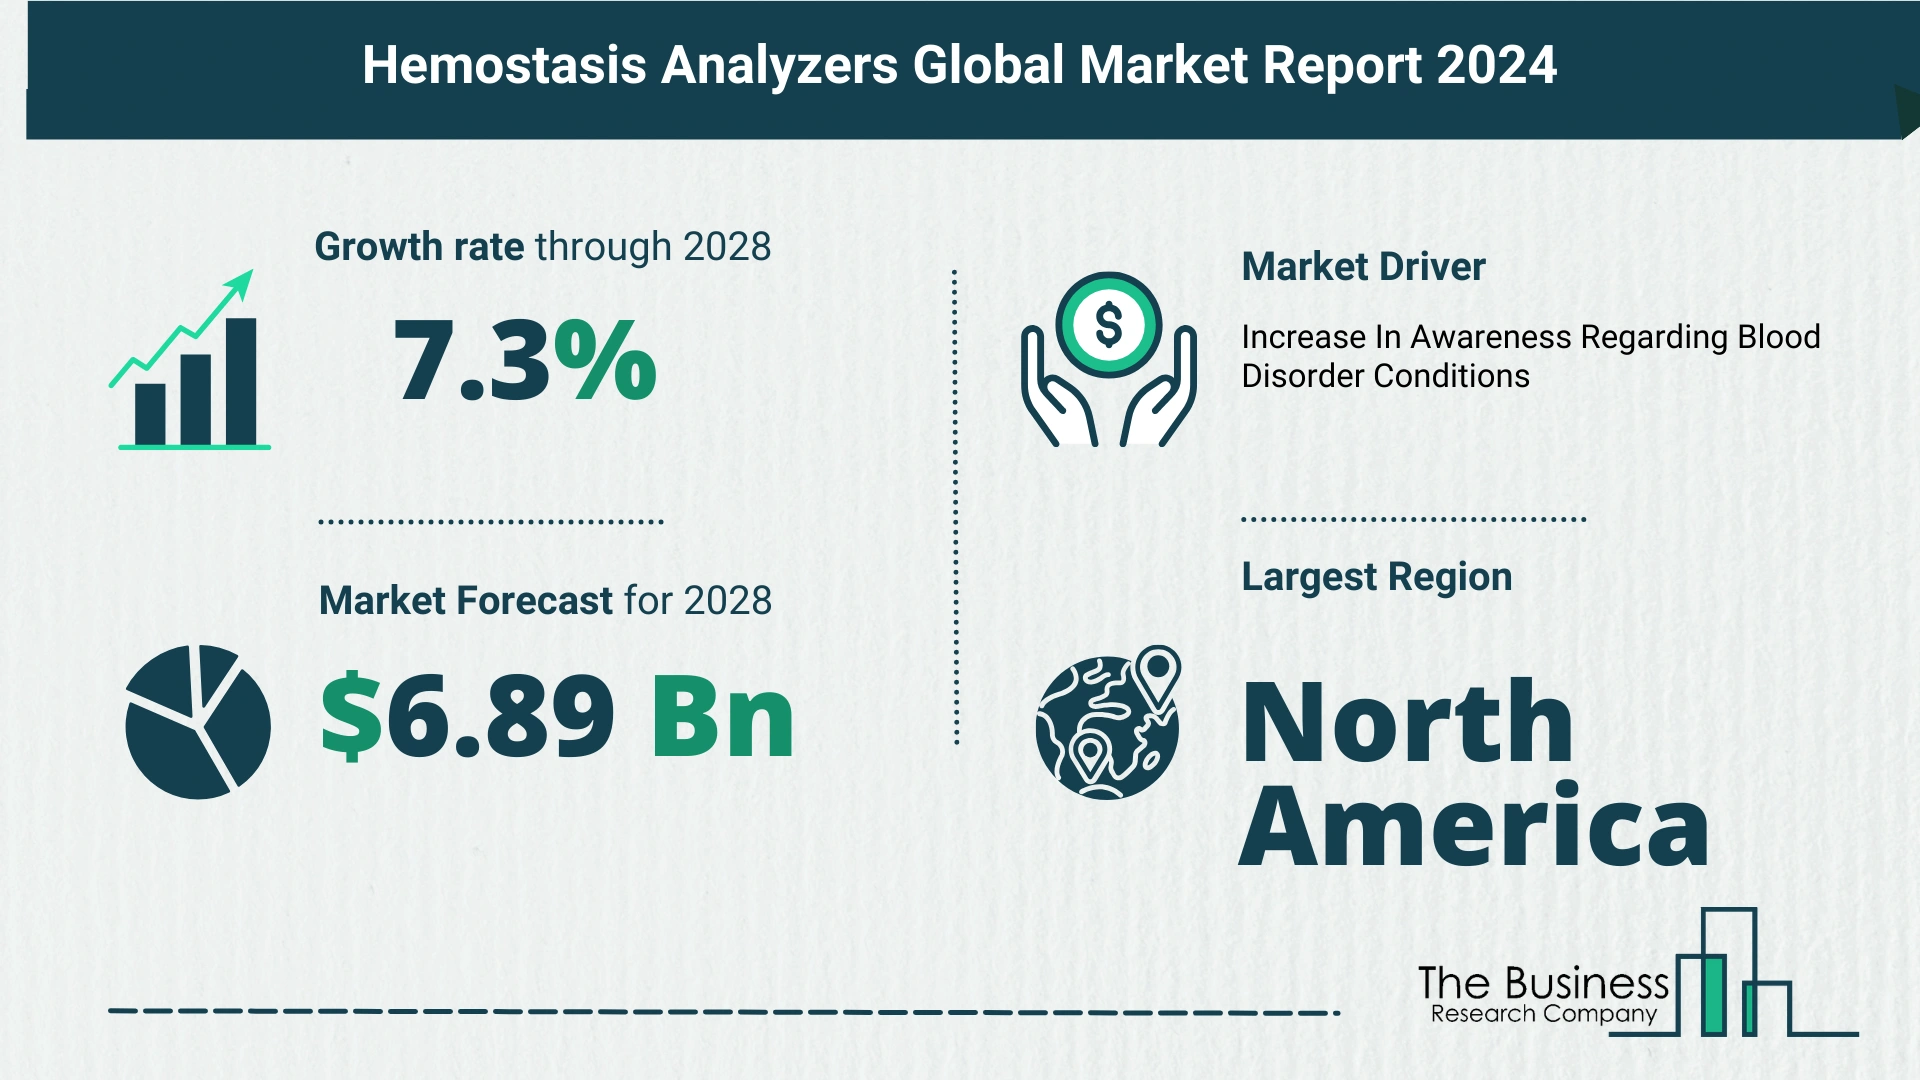 Global Hemostasis Analyzers Market Size